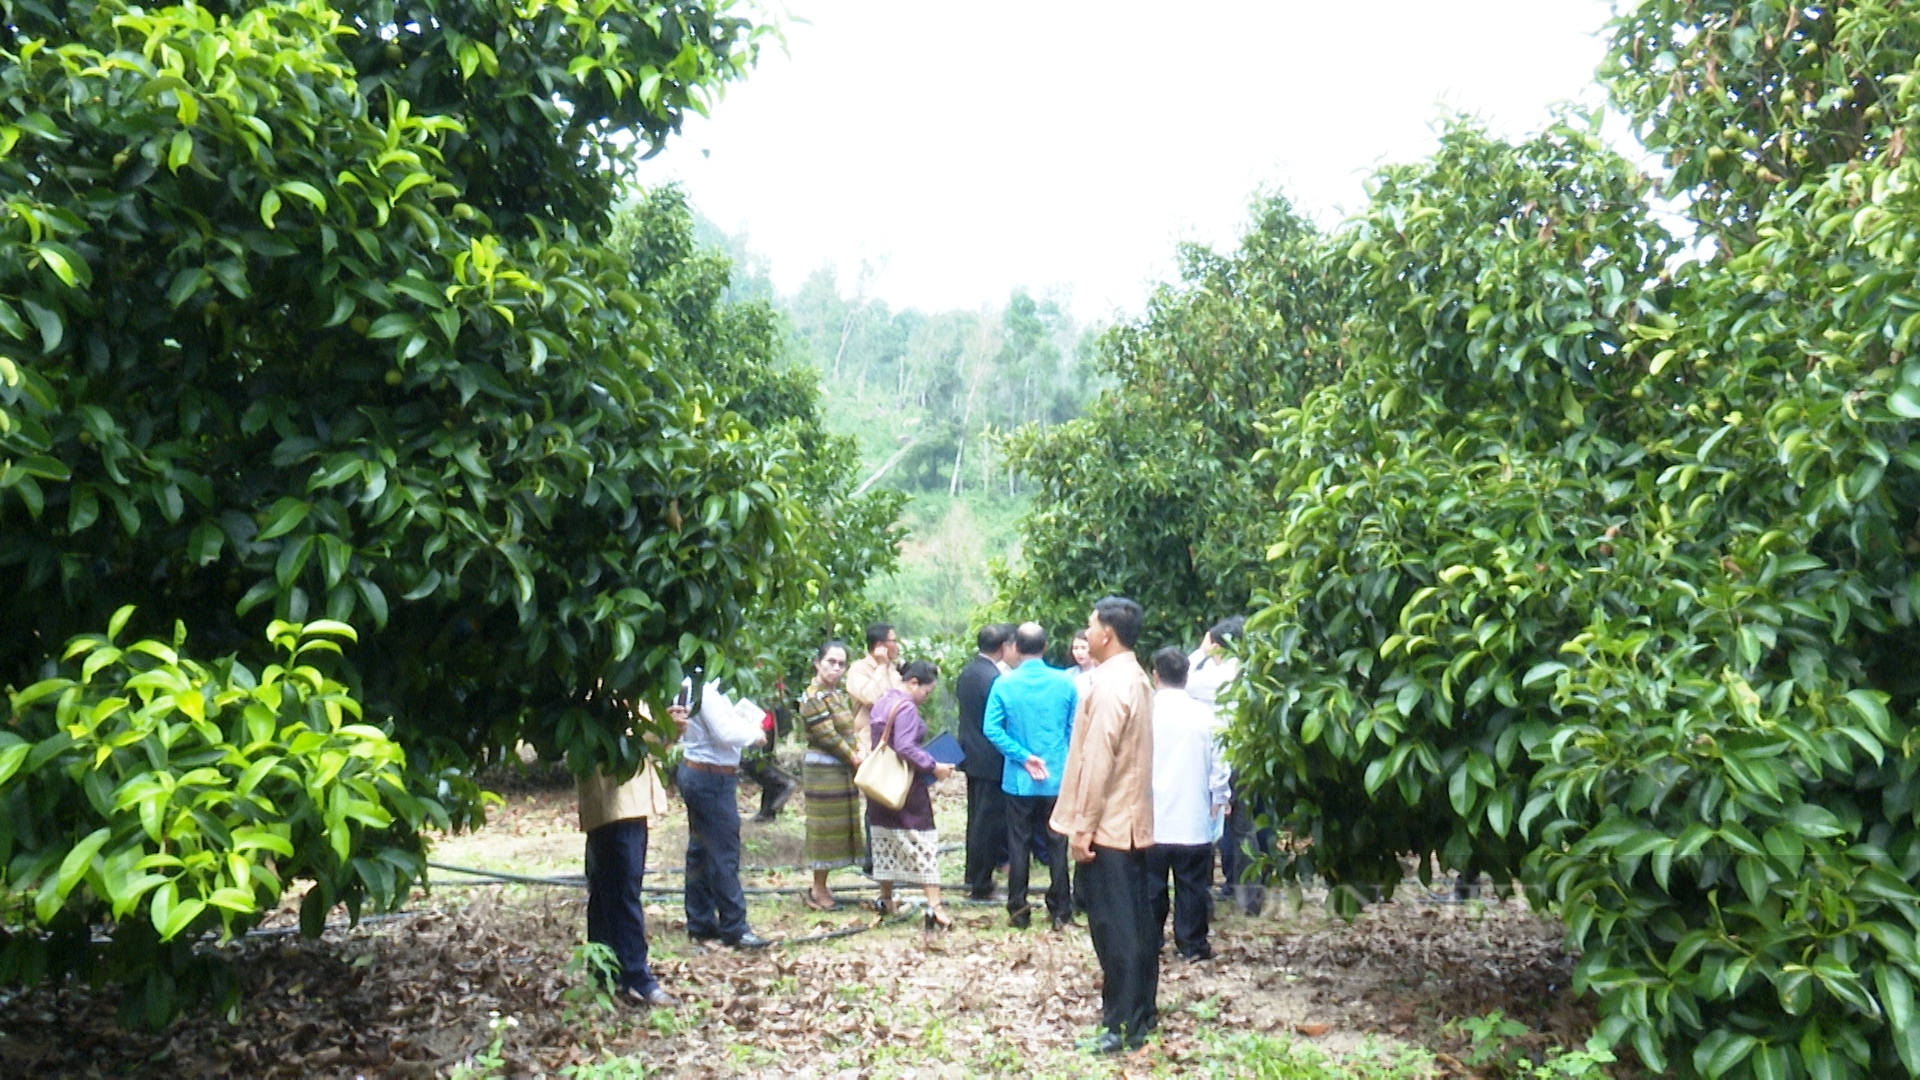 Quảng Nam: Đoàn công tác tỉnh Sê Kông thăm mô hình triệu phú của nông dân xứ Tiên - Ảnh 2.